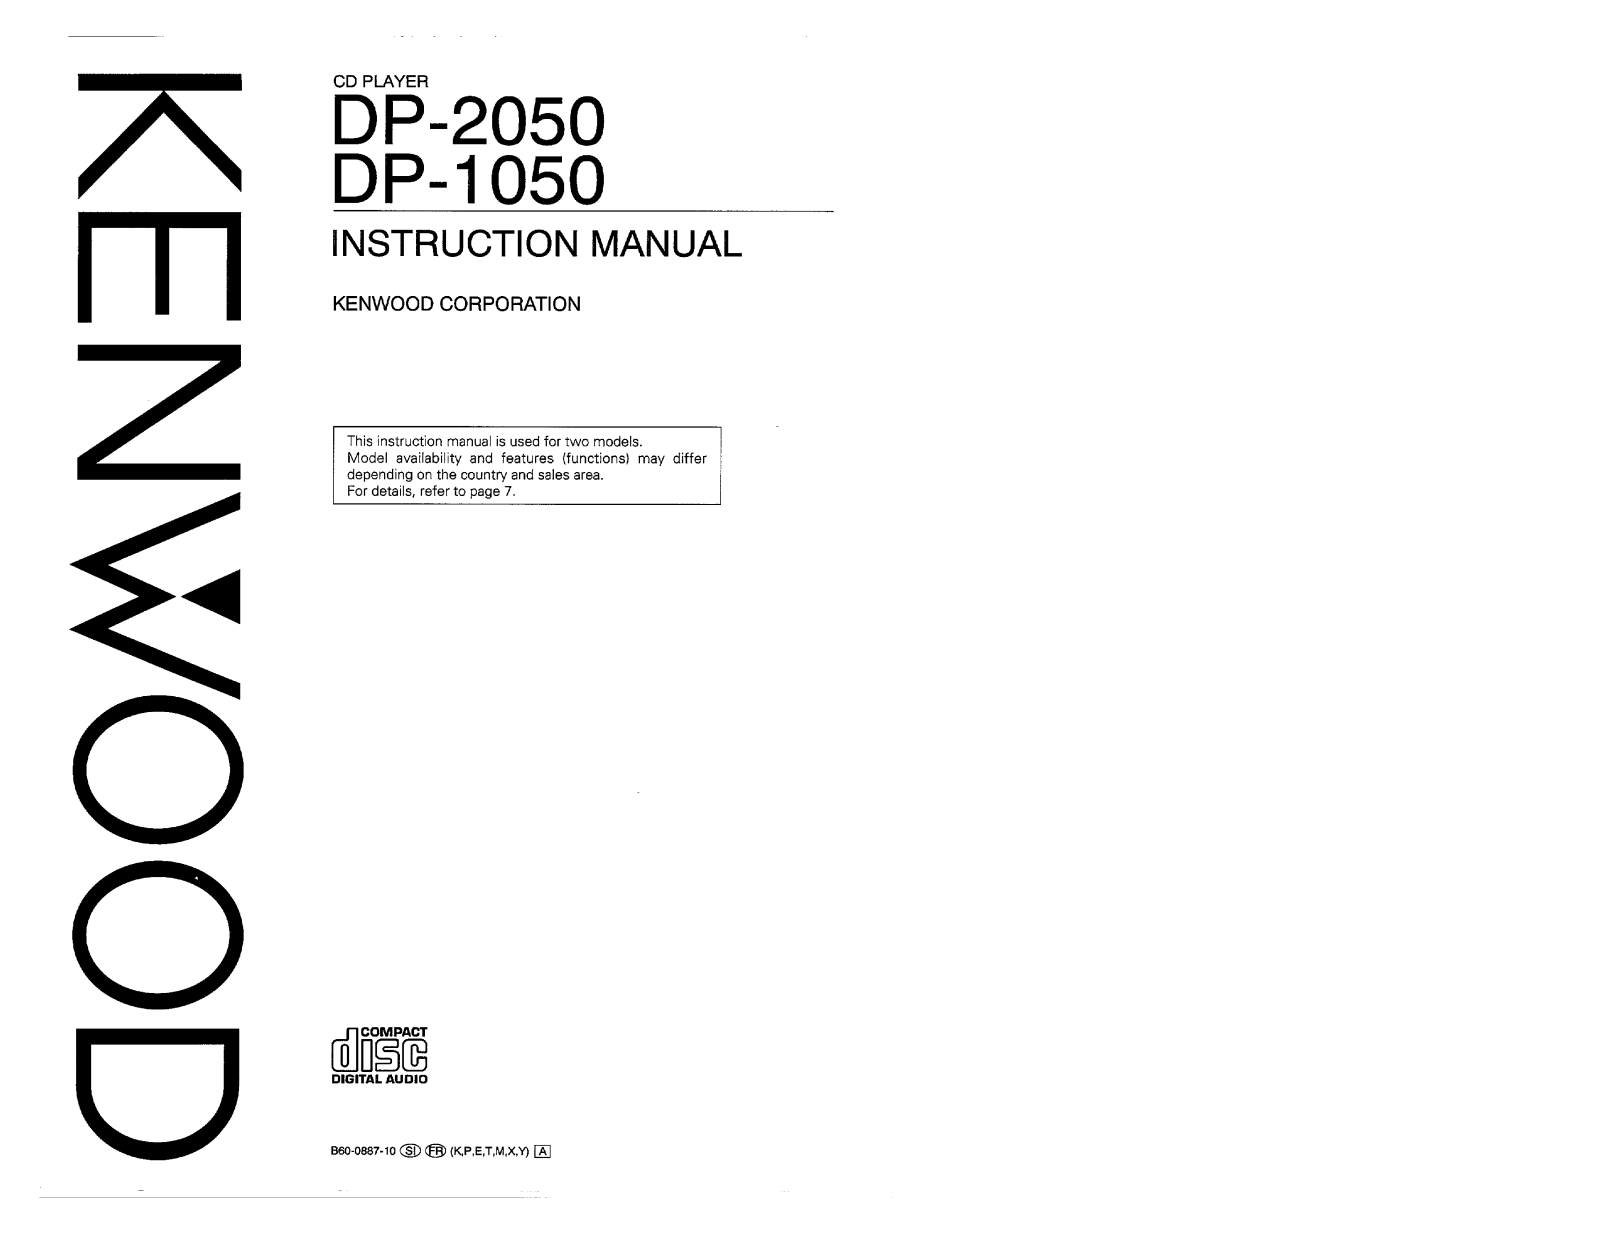 Kenwood DP-2050, DP-1050 Owner's Manual